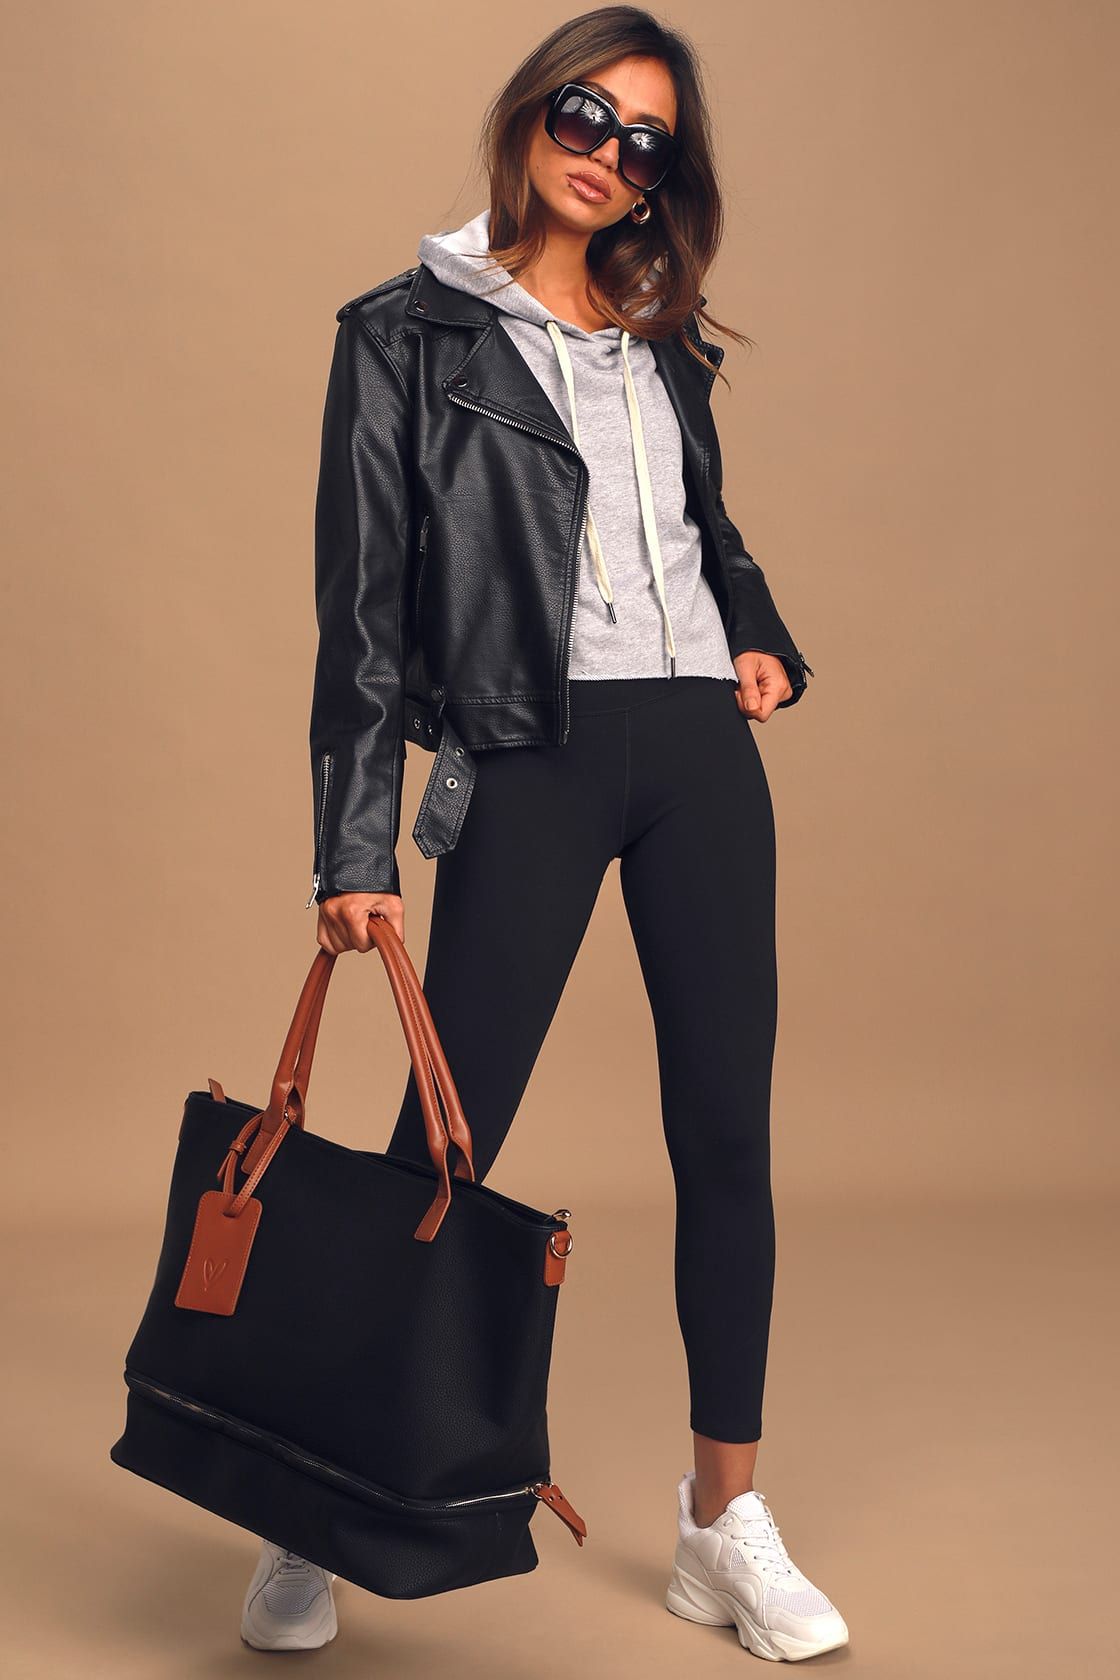 Weekend Traveler Black and Cognac Tote Bag | Lulus (US)